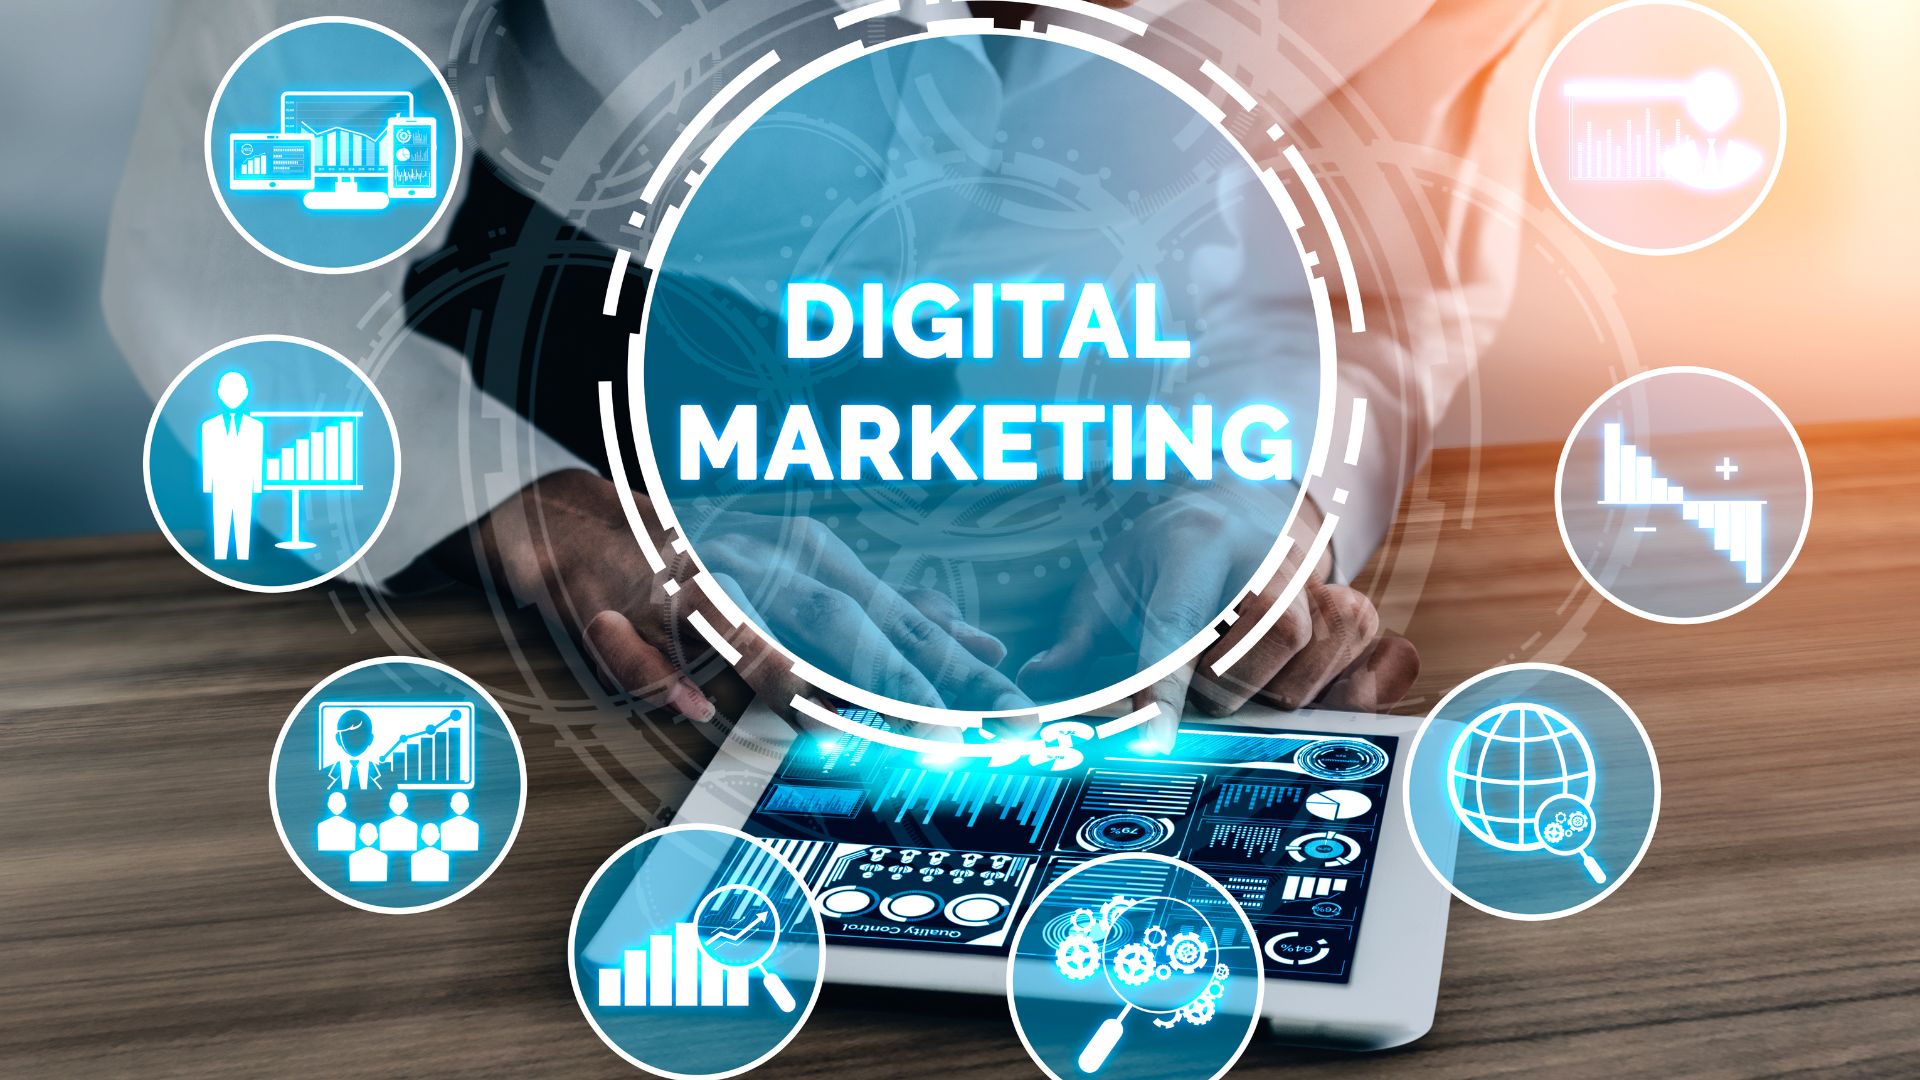 O que é Marketing Digital